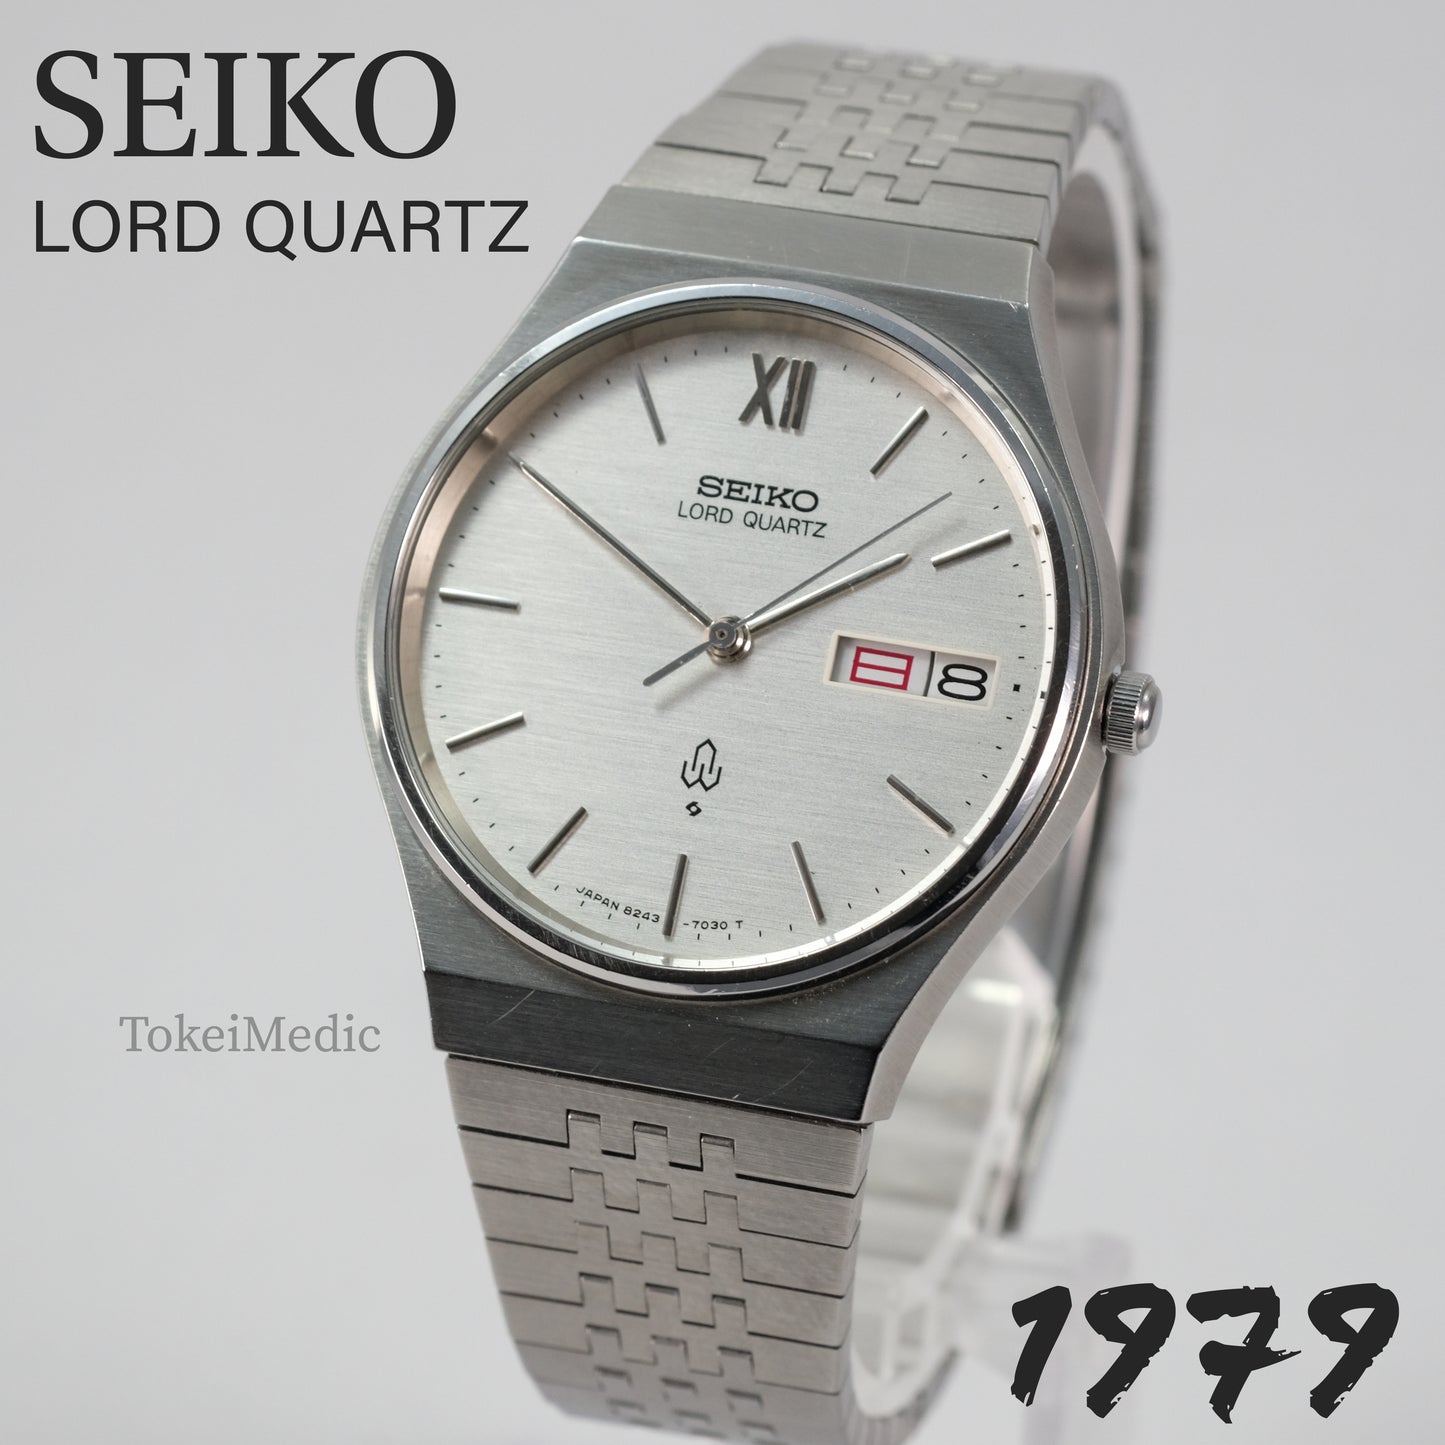 1979 Seiko Lord Quartz 8243-7020